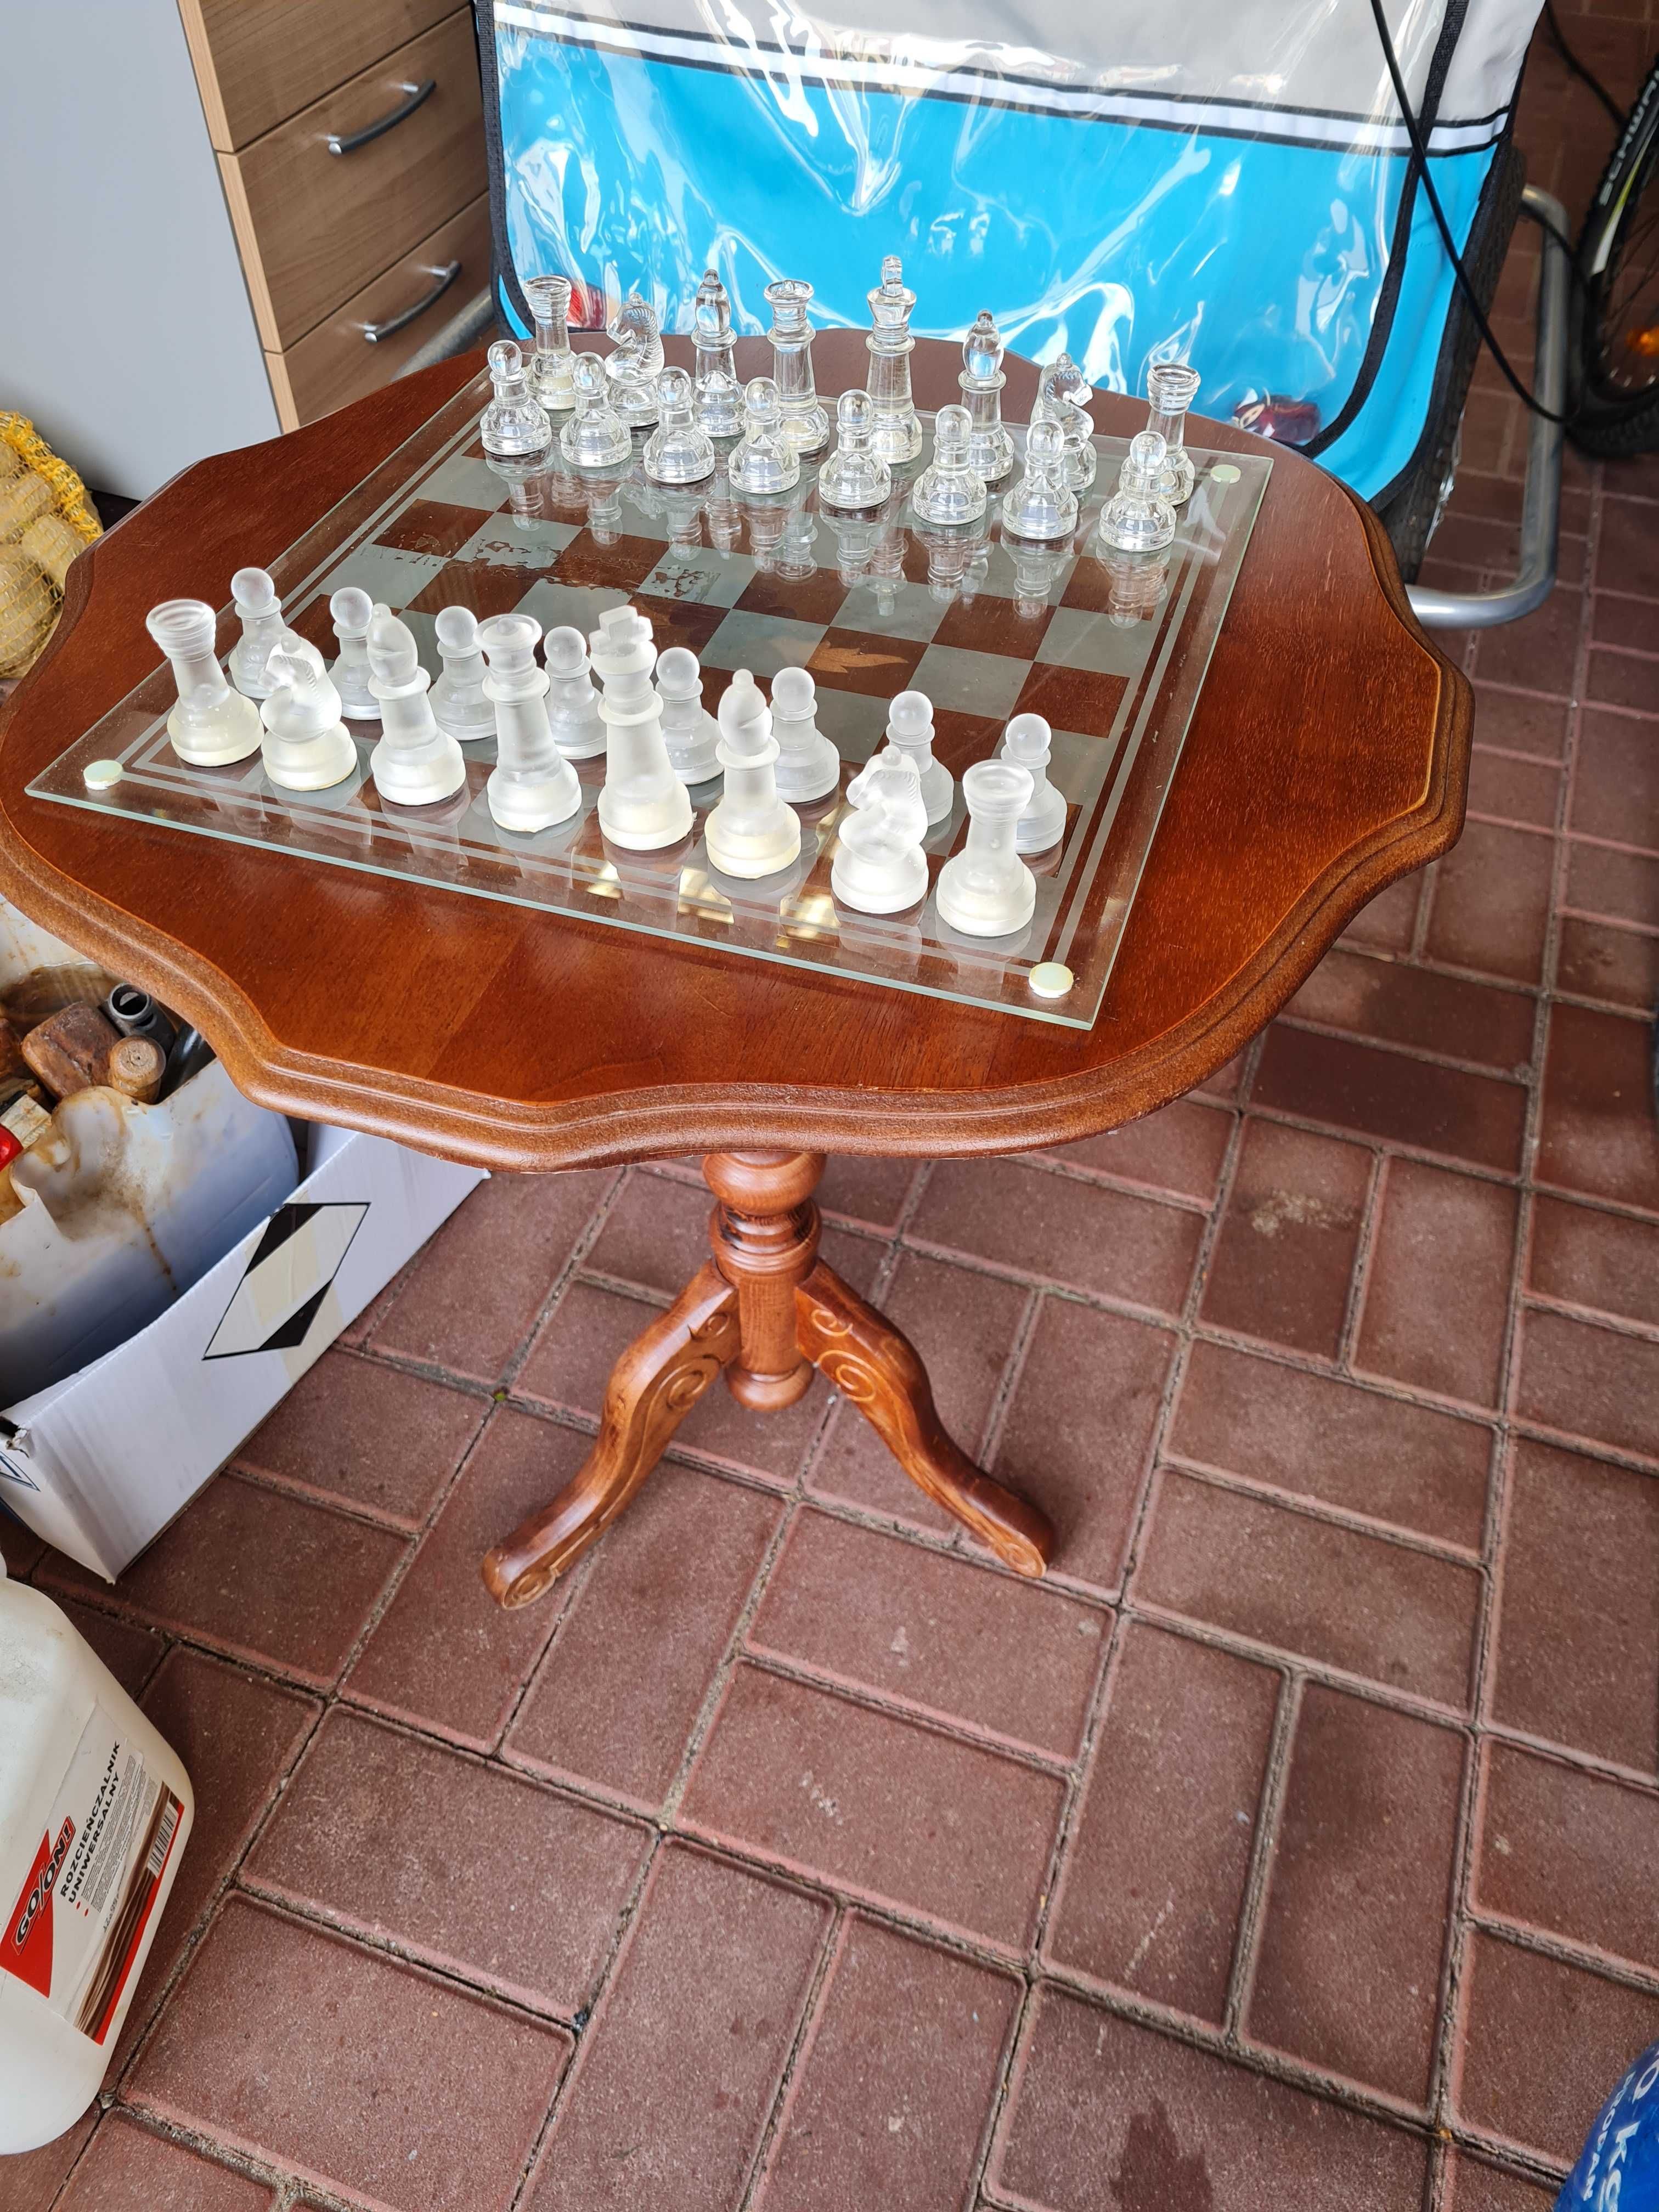 Szklane szachy na bardzo eleganckim stoliku